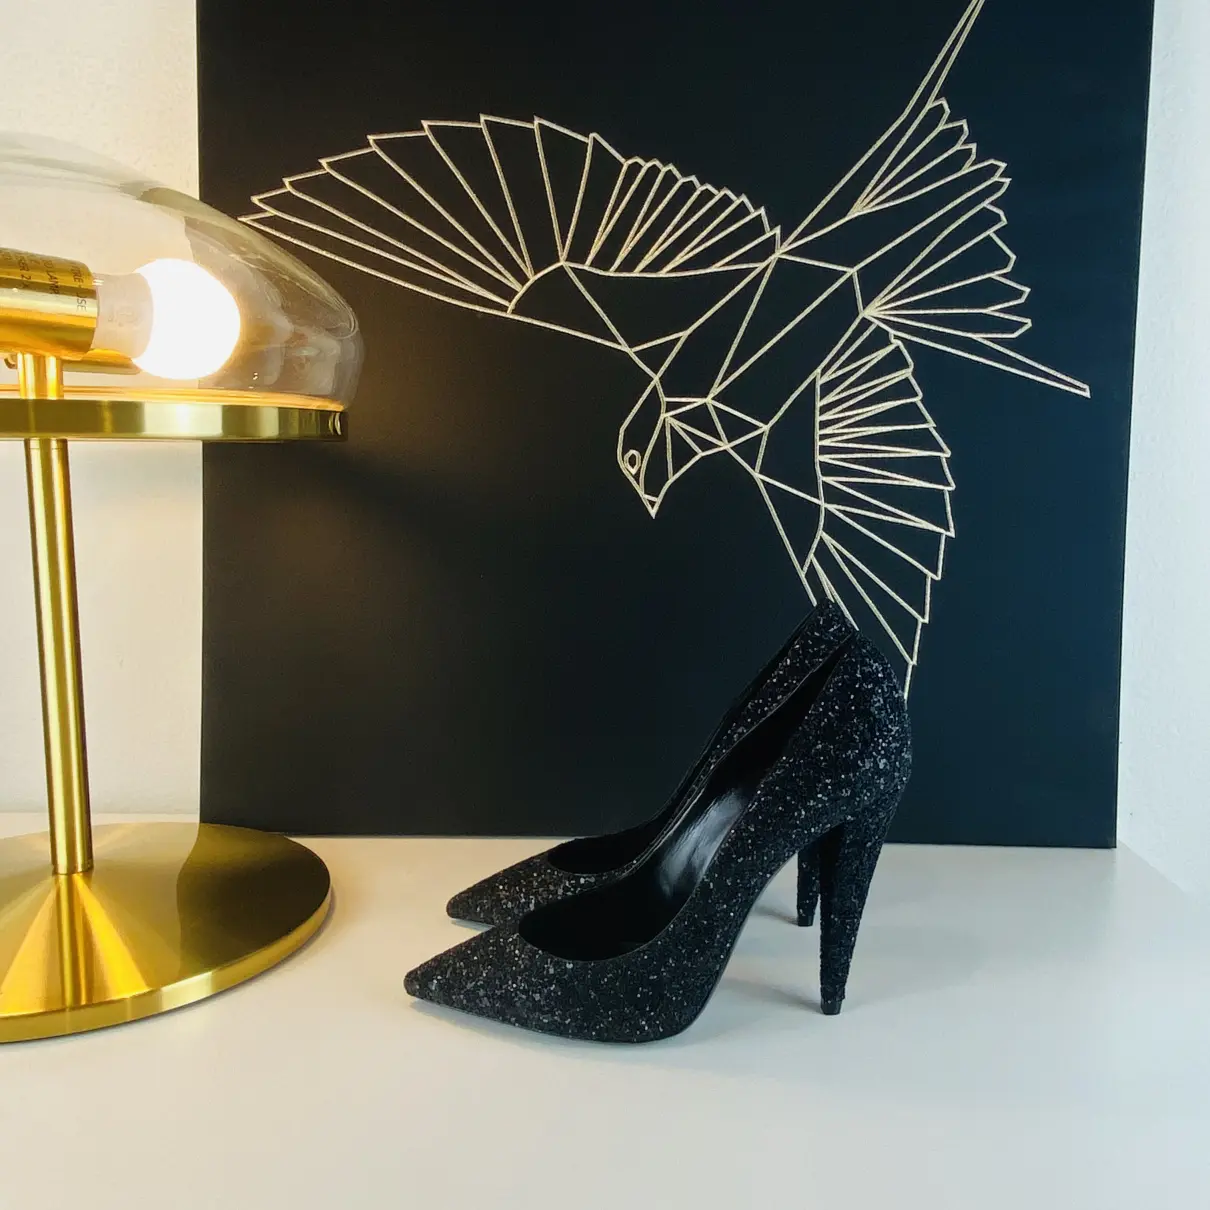 Buy Saint Laurent Leather heels online